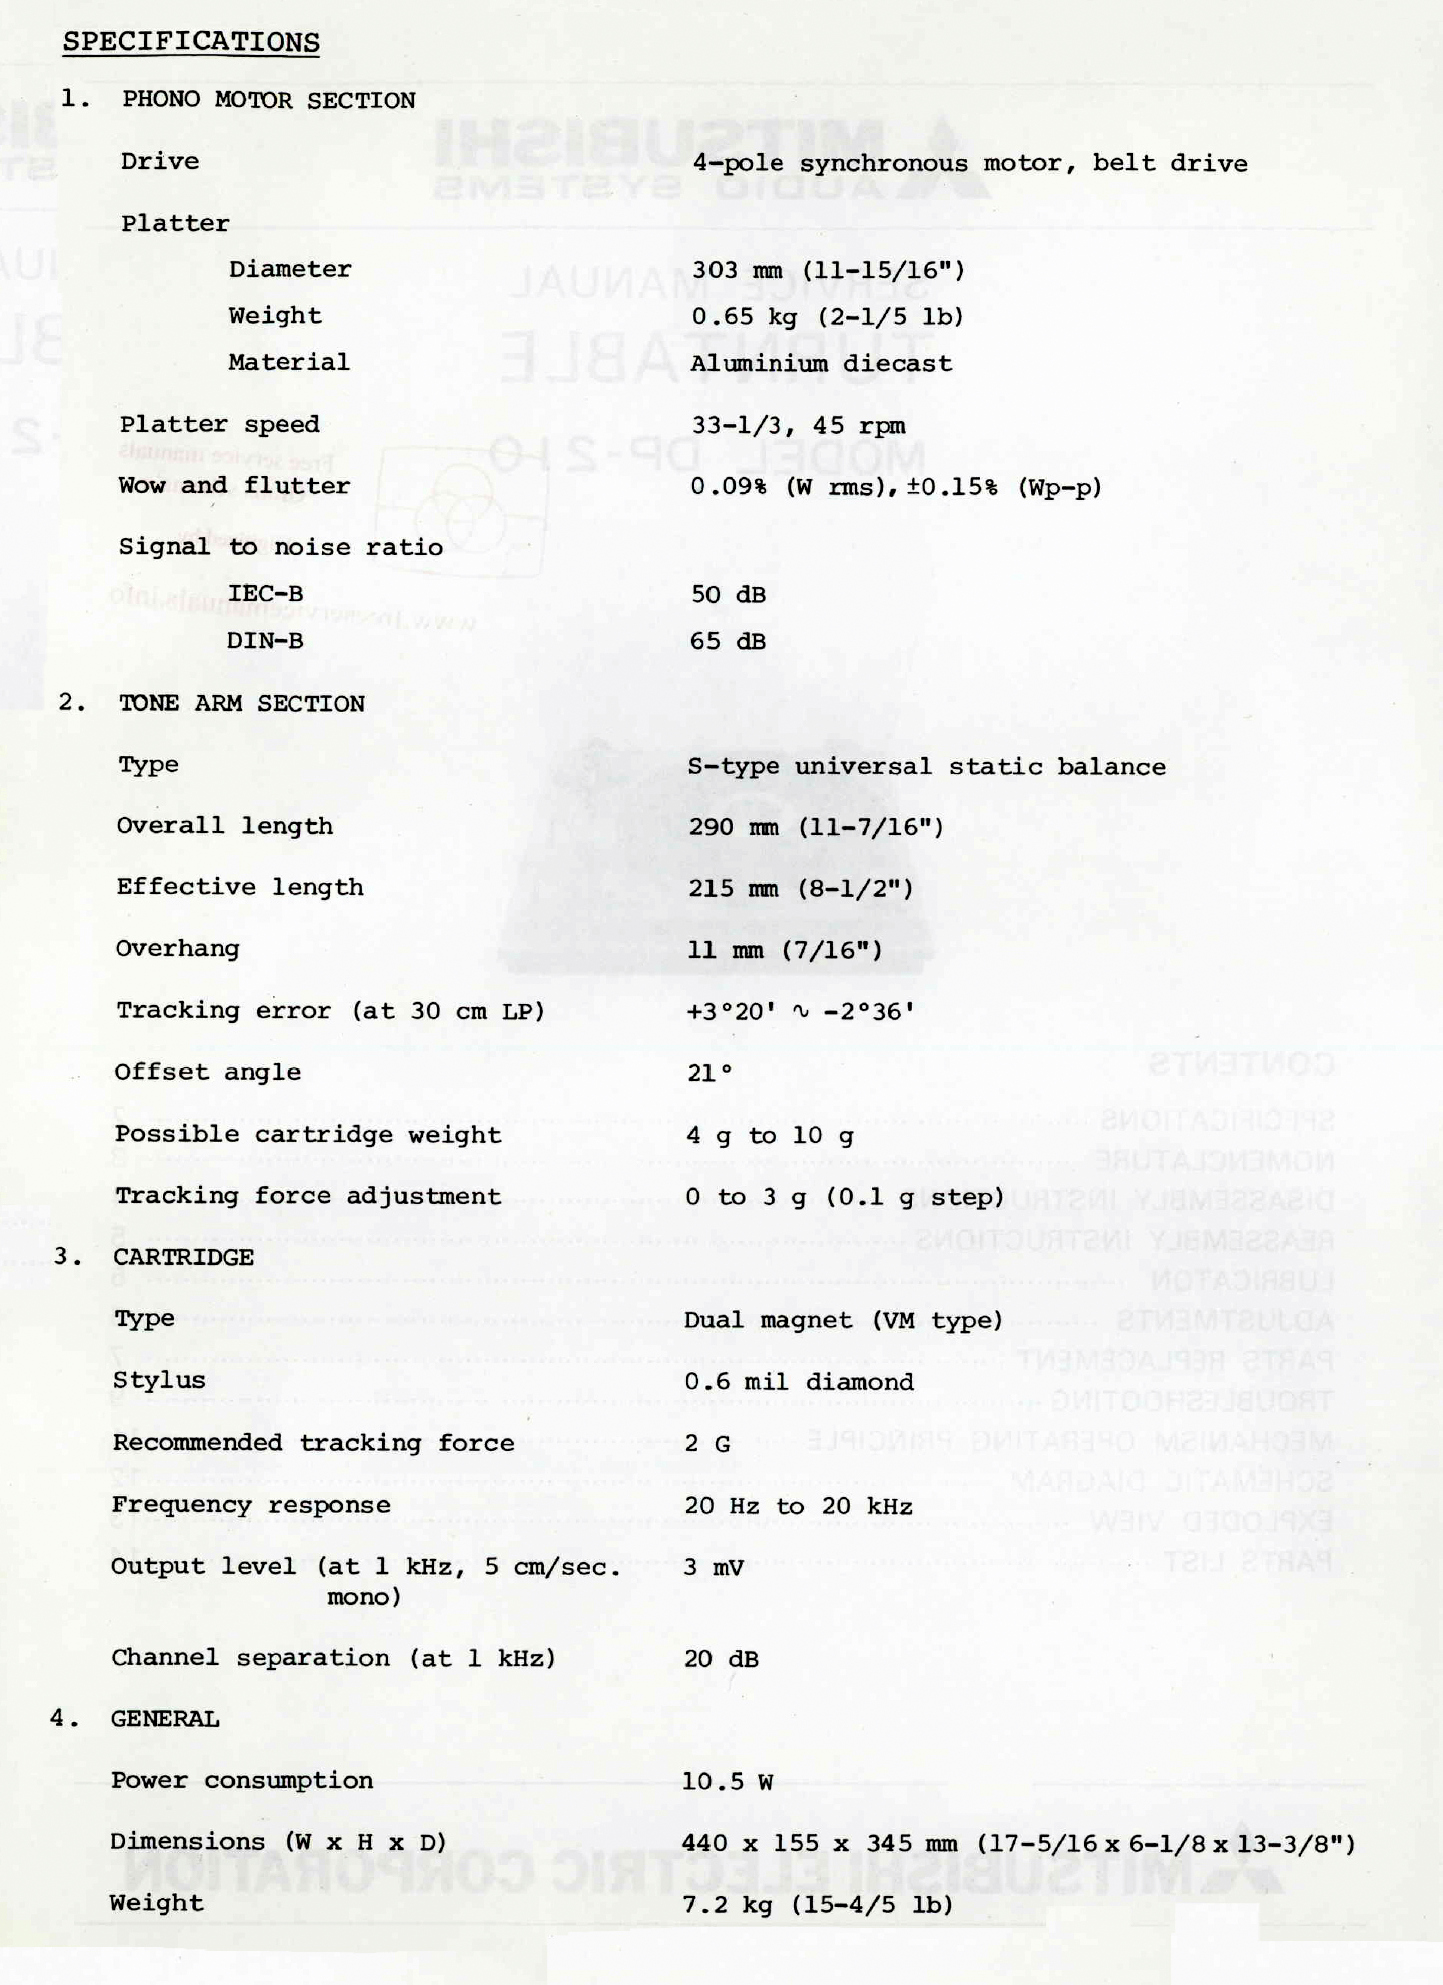 Mitsubishi DP-210-Daten-1980.jpg